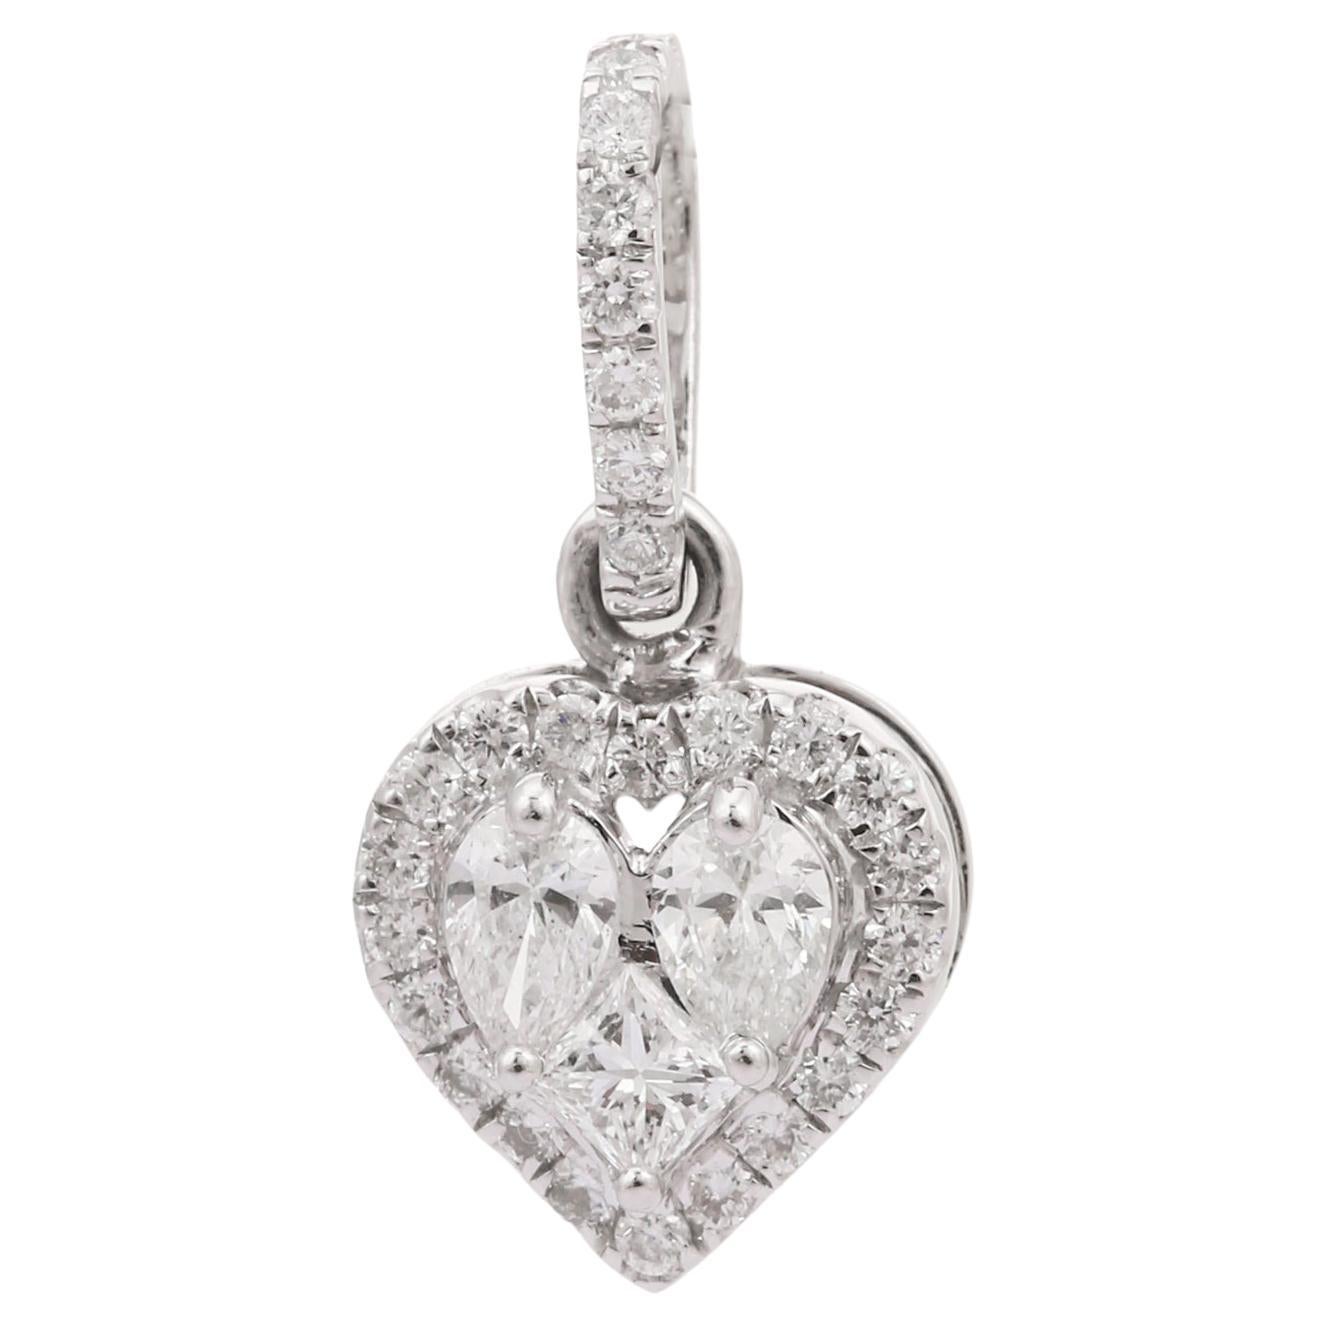 14k Solid White Gold Dainty Diamond Heart Pendant Gift For Her, Christmas Gift